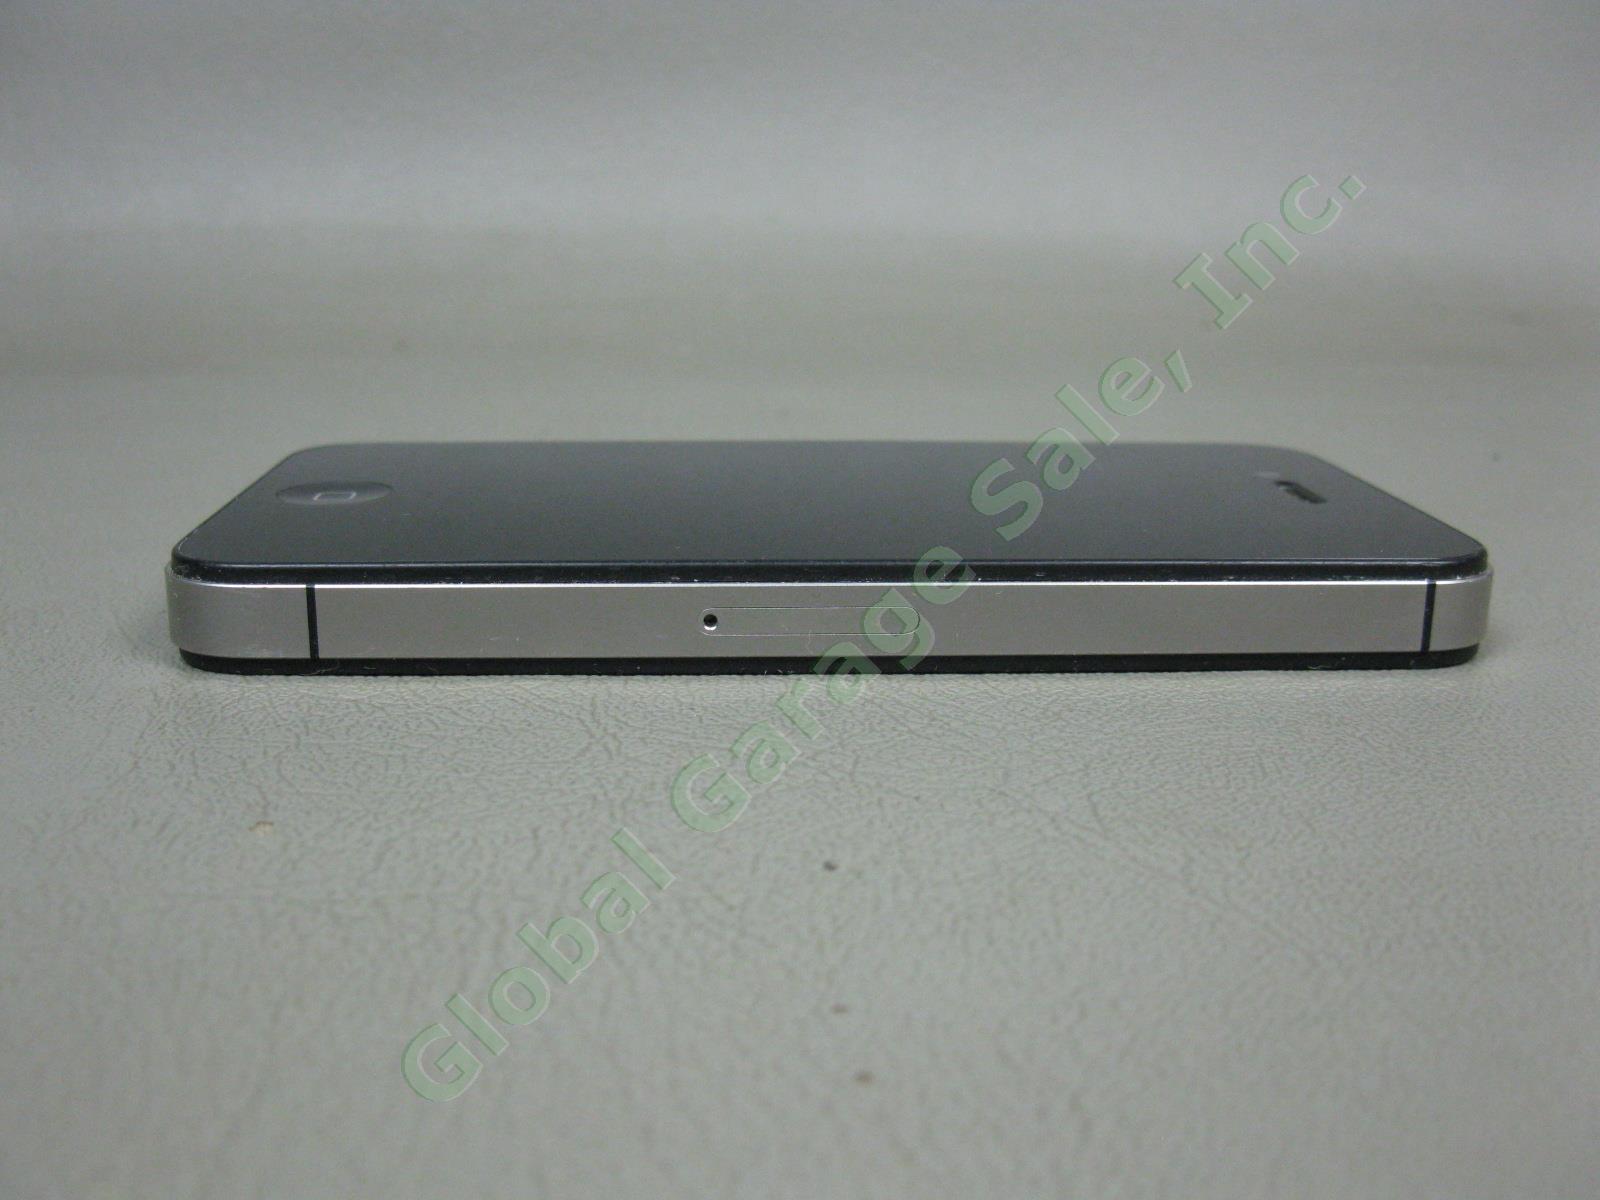 Apple iPhone 4s 16GB Black Model A1387 MD276LL/A Verizon Unlocked + Reset NO RES 2